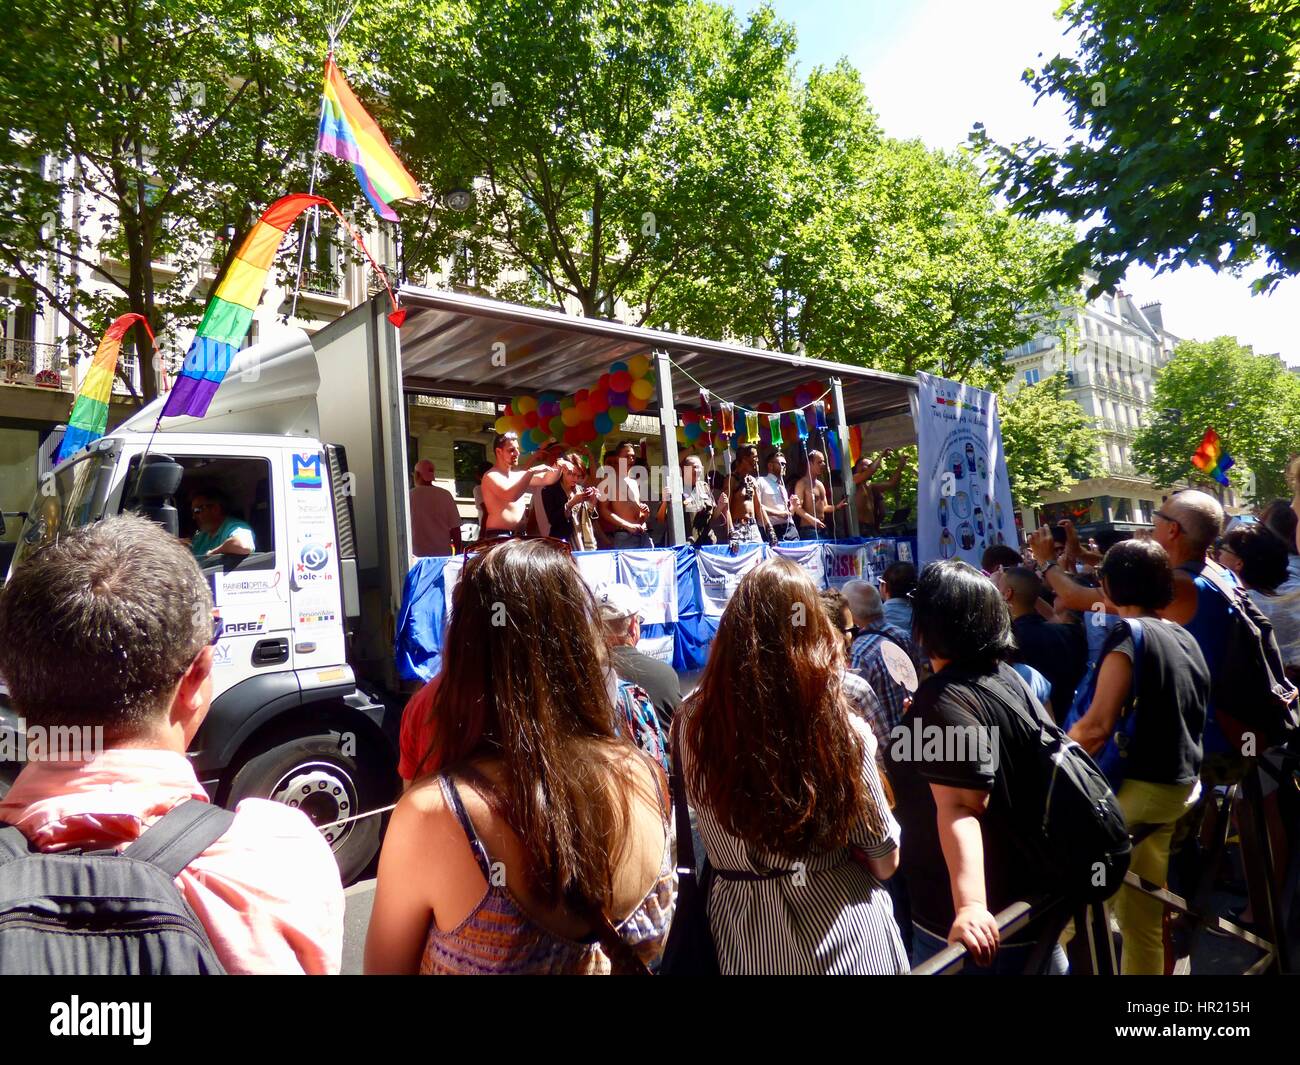 Marche des Fiertés 2015, Paris Pride Parade, truck-style float and crowd watching, Blvd Saint-Michel, Paris, France Stock Photo